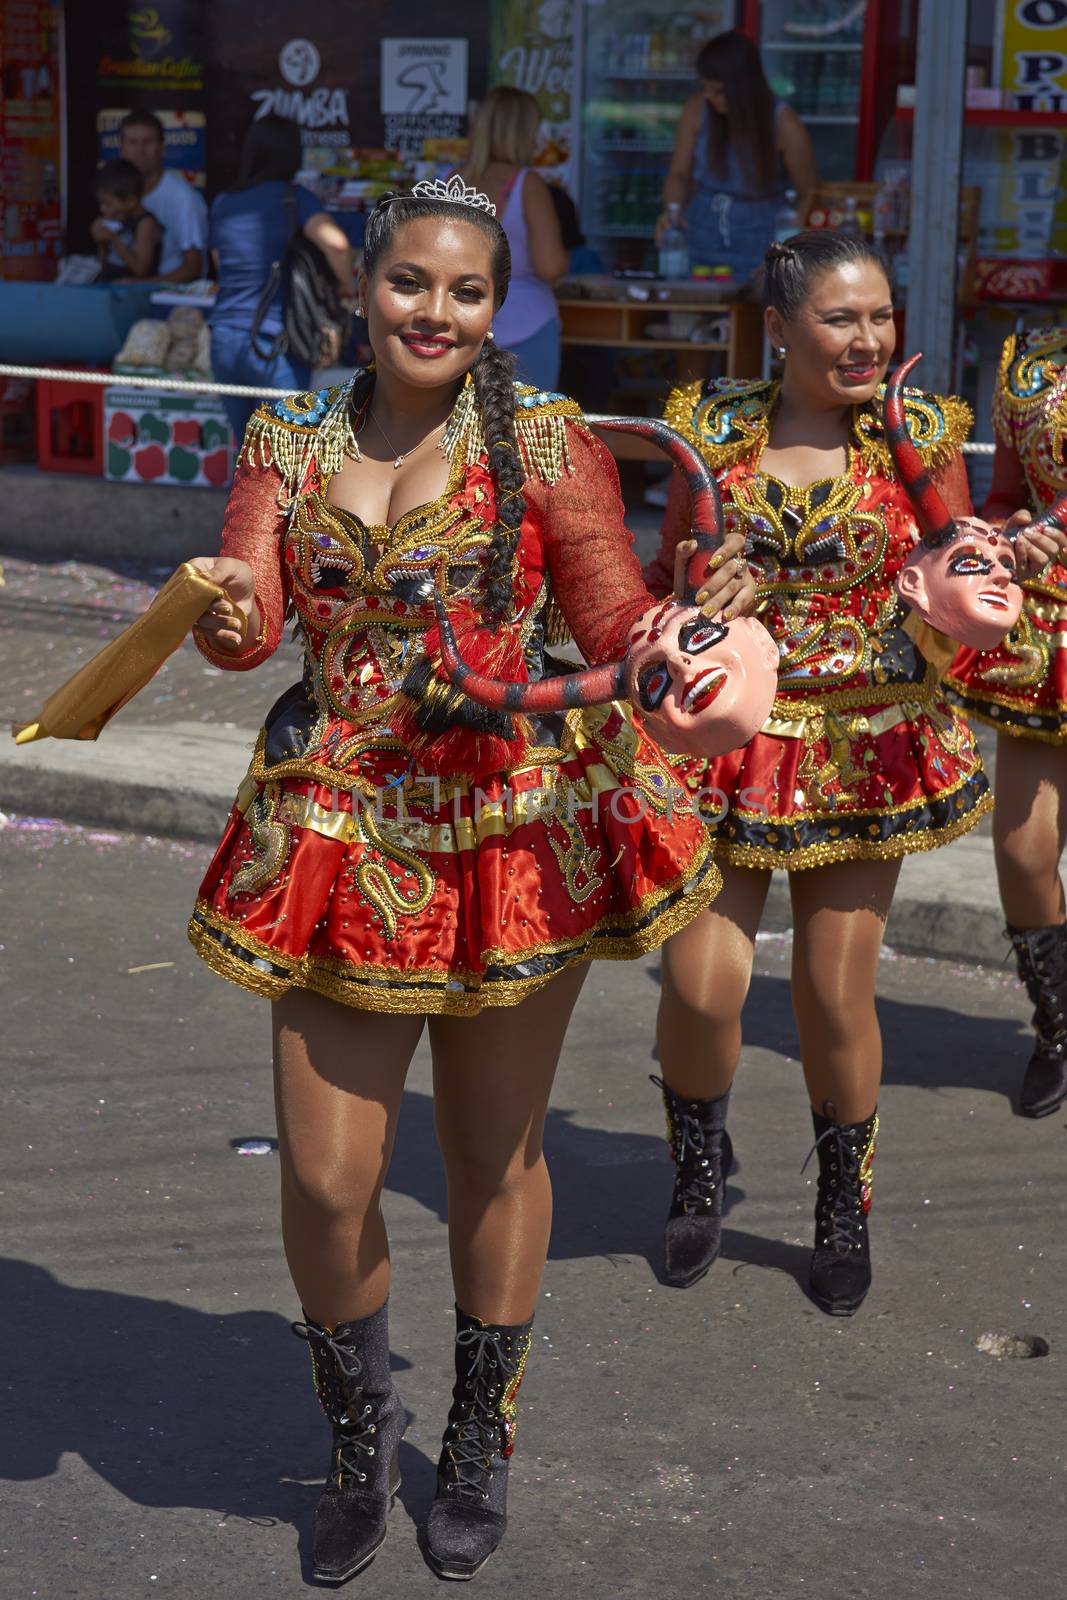 Young women performing the Diablada (dance of the devil) as part of the Carnaval Andino con la Fuerza del Sol in Arica, Chile. The dance originates in Oruro, Bolivia.